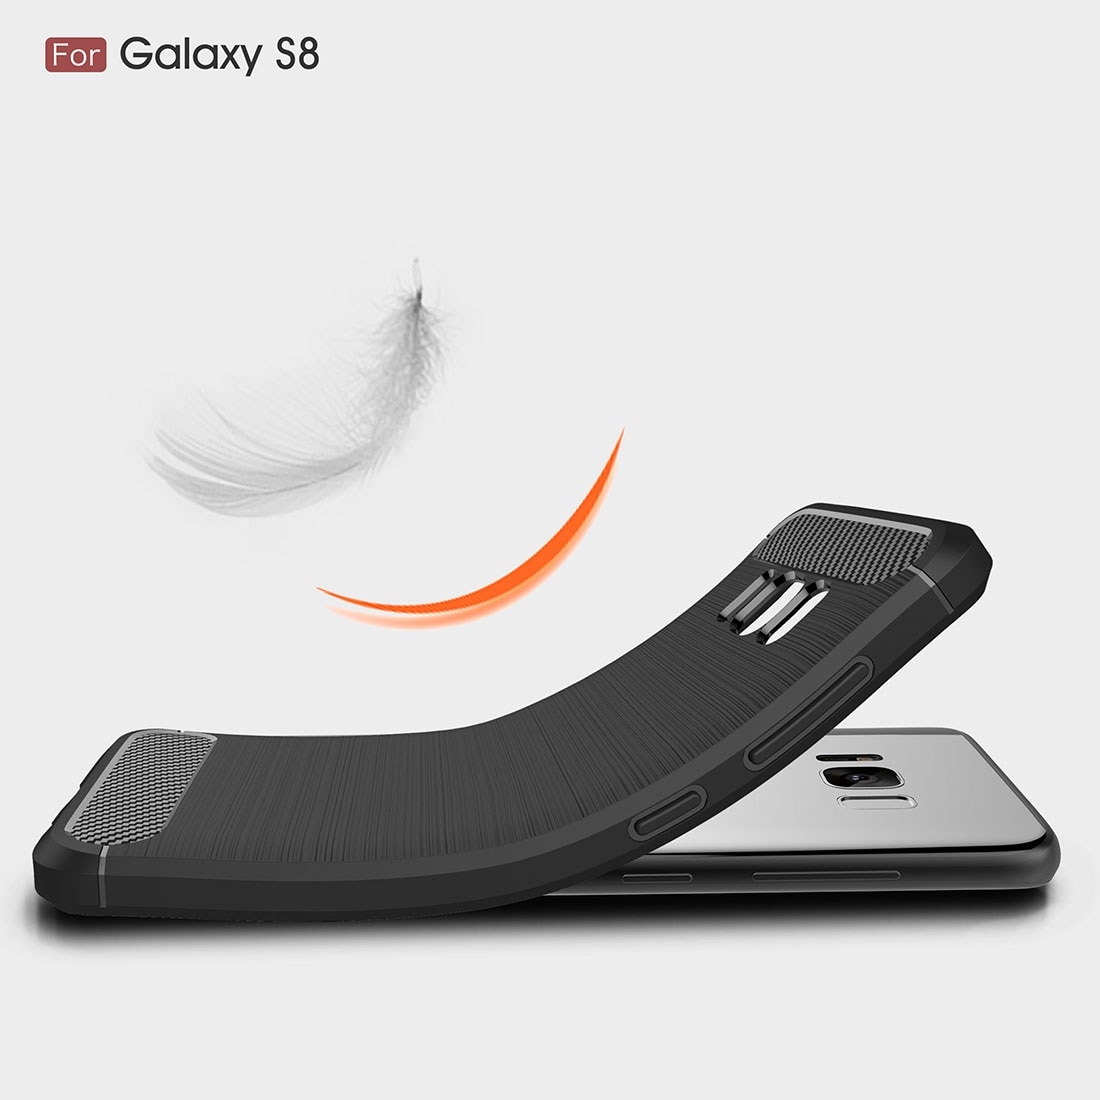 Shell Samsung Galaxy S8 geborsteld carbonfiber